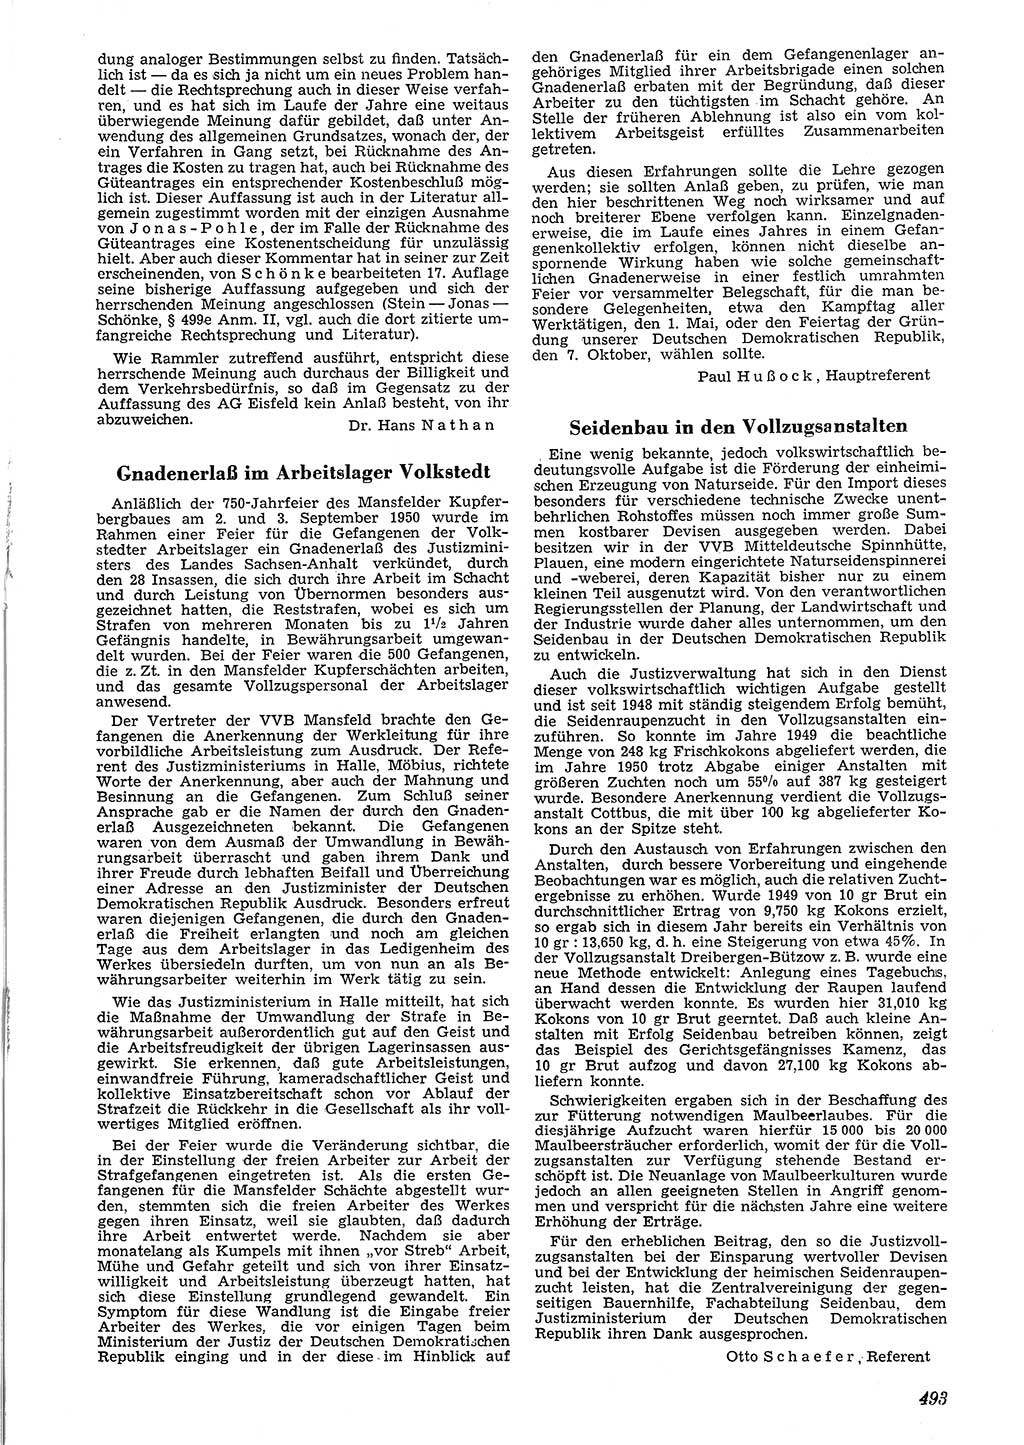 Neue Justiz (NJ), Zeitschrift für Recht und Rechtswissenschaft [Deutsche Demokratische Republik (DDR)], 4. Jahrgang 1950, Seite 493 (NJ DDR 1950, S. 493)